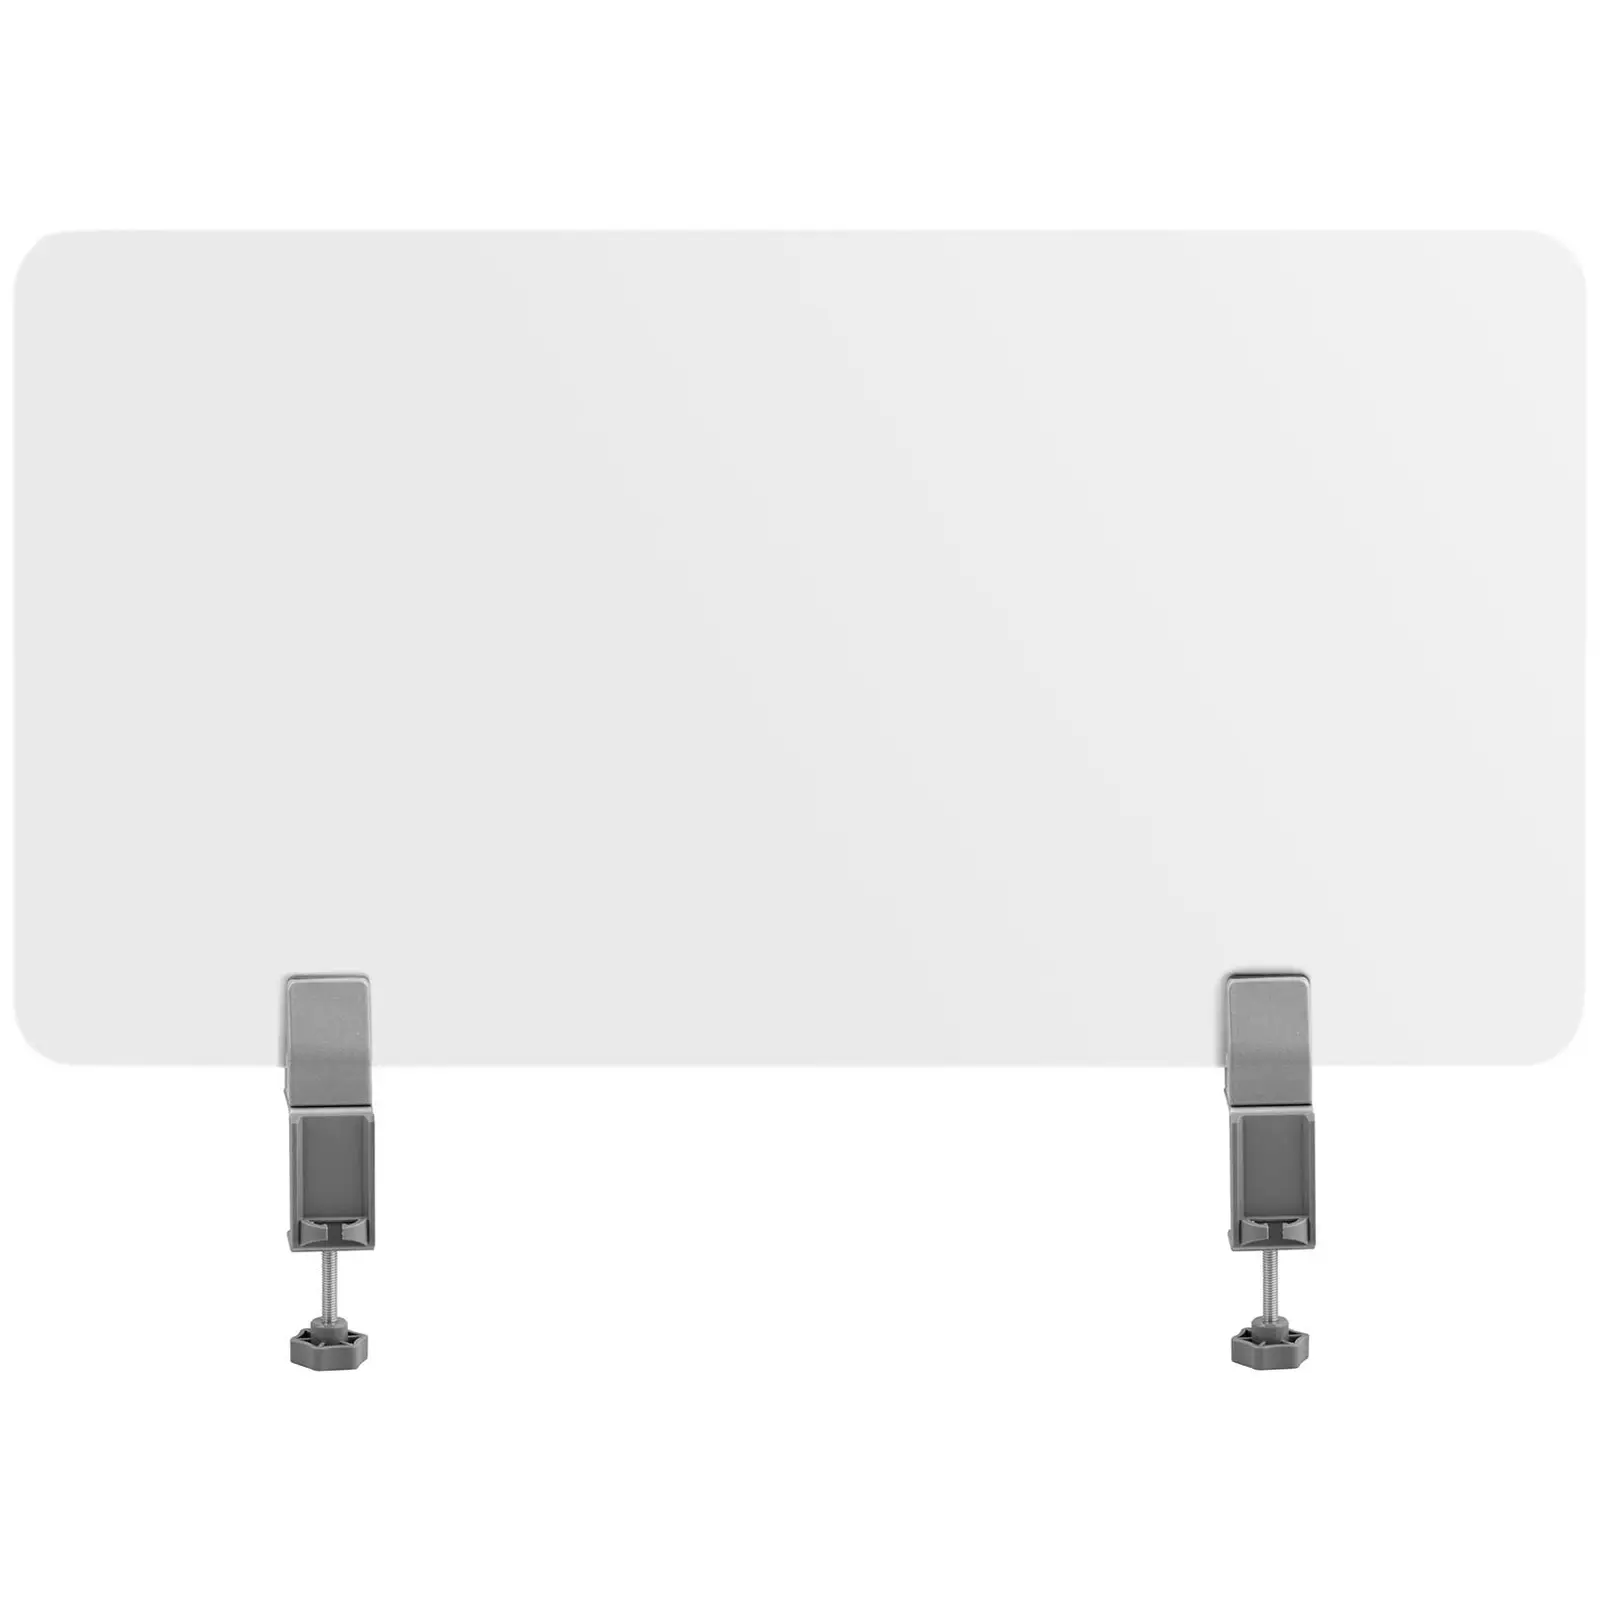 Bordskjermer – sett med 3 med 2 størrelser: 1500 x 400 mm, 750 x 400 mm